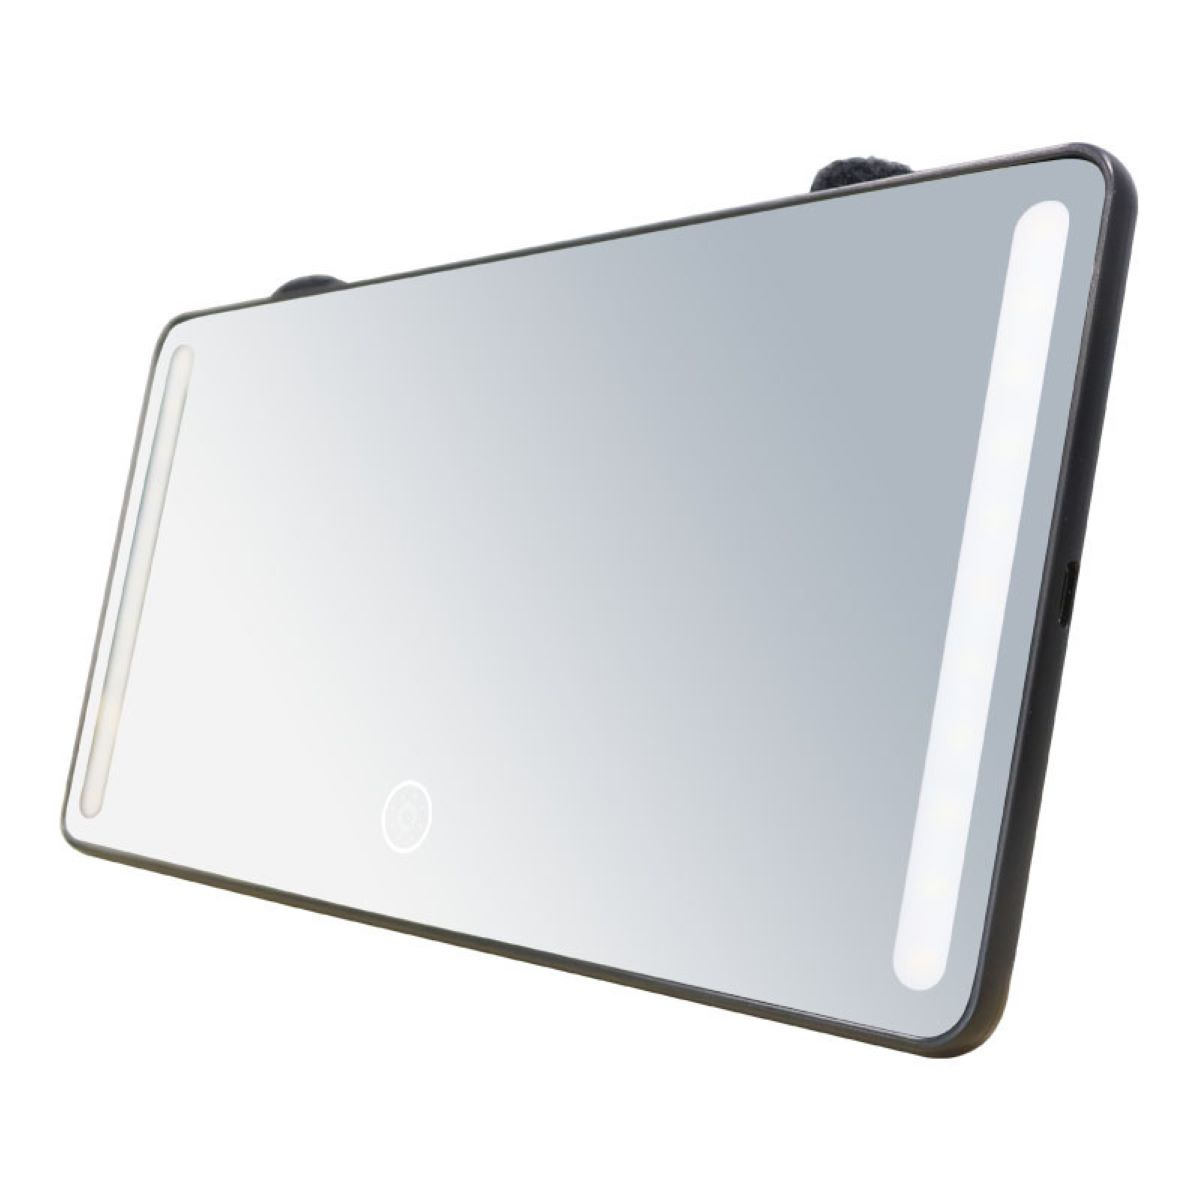 LACAMAX Schwarzer LED-Autokosmetikspiegel-Hochauflösender Spiegel, transparente Beleuchtung LED-Licht ergänzende